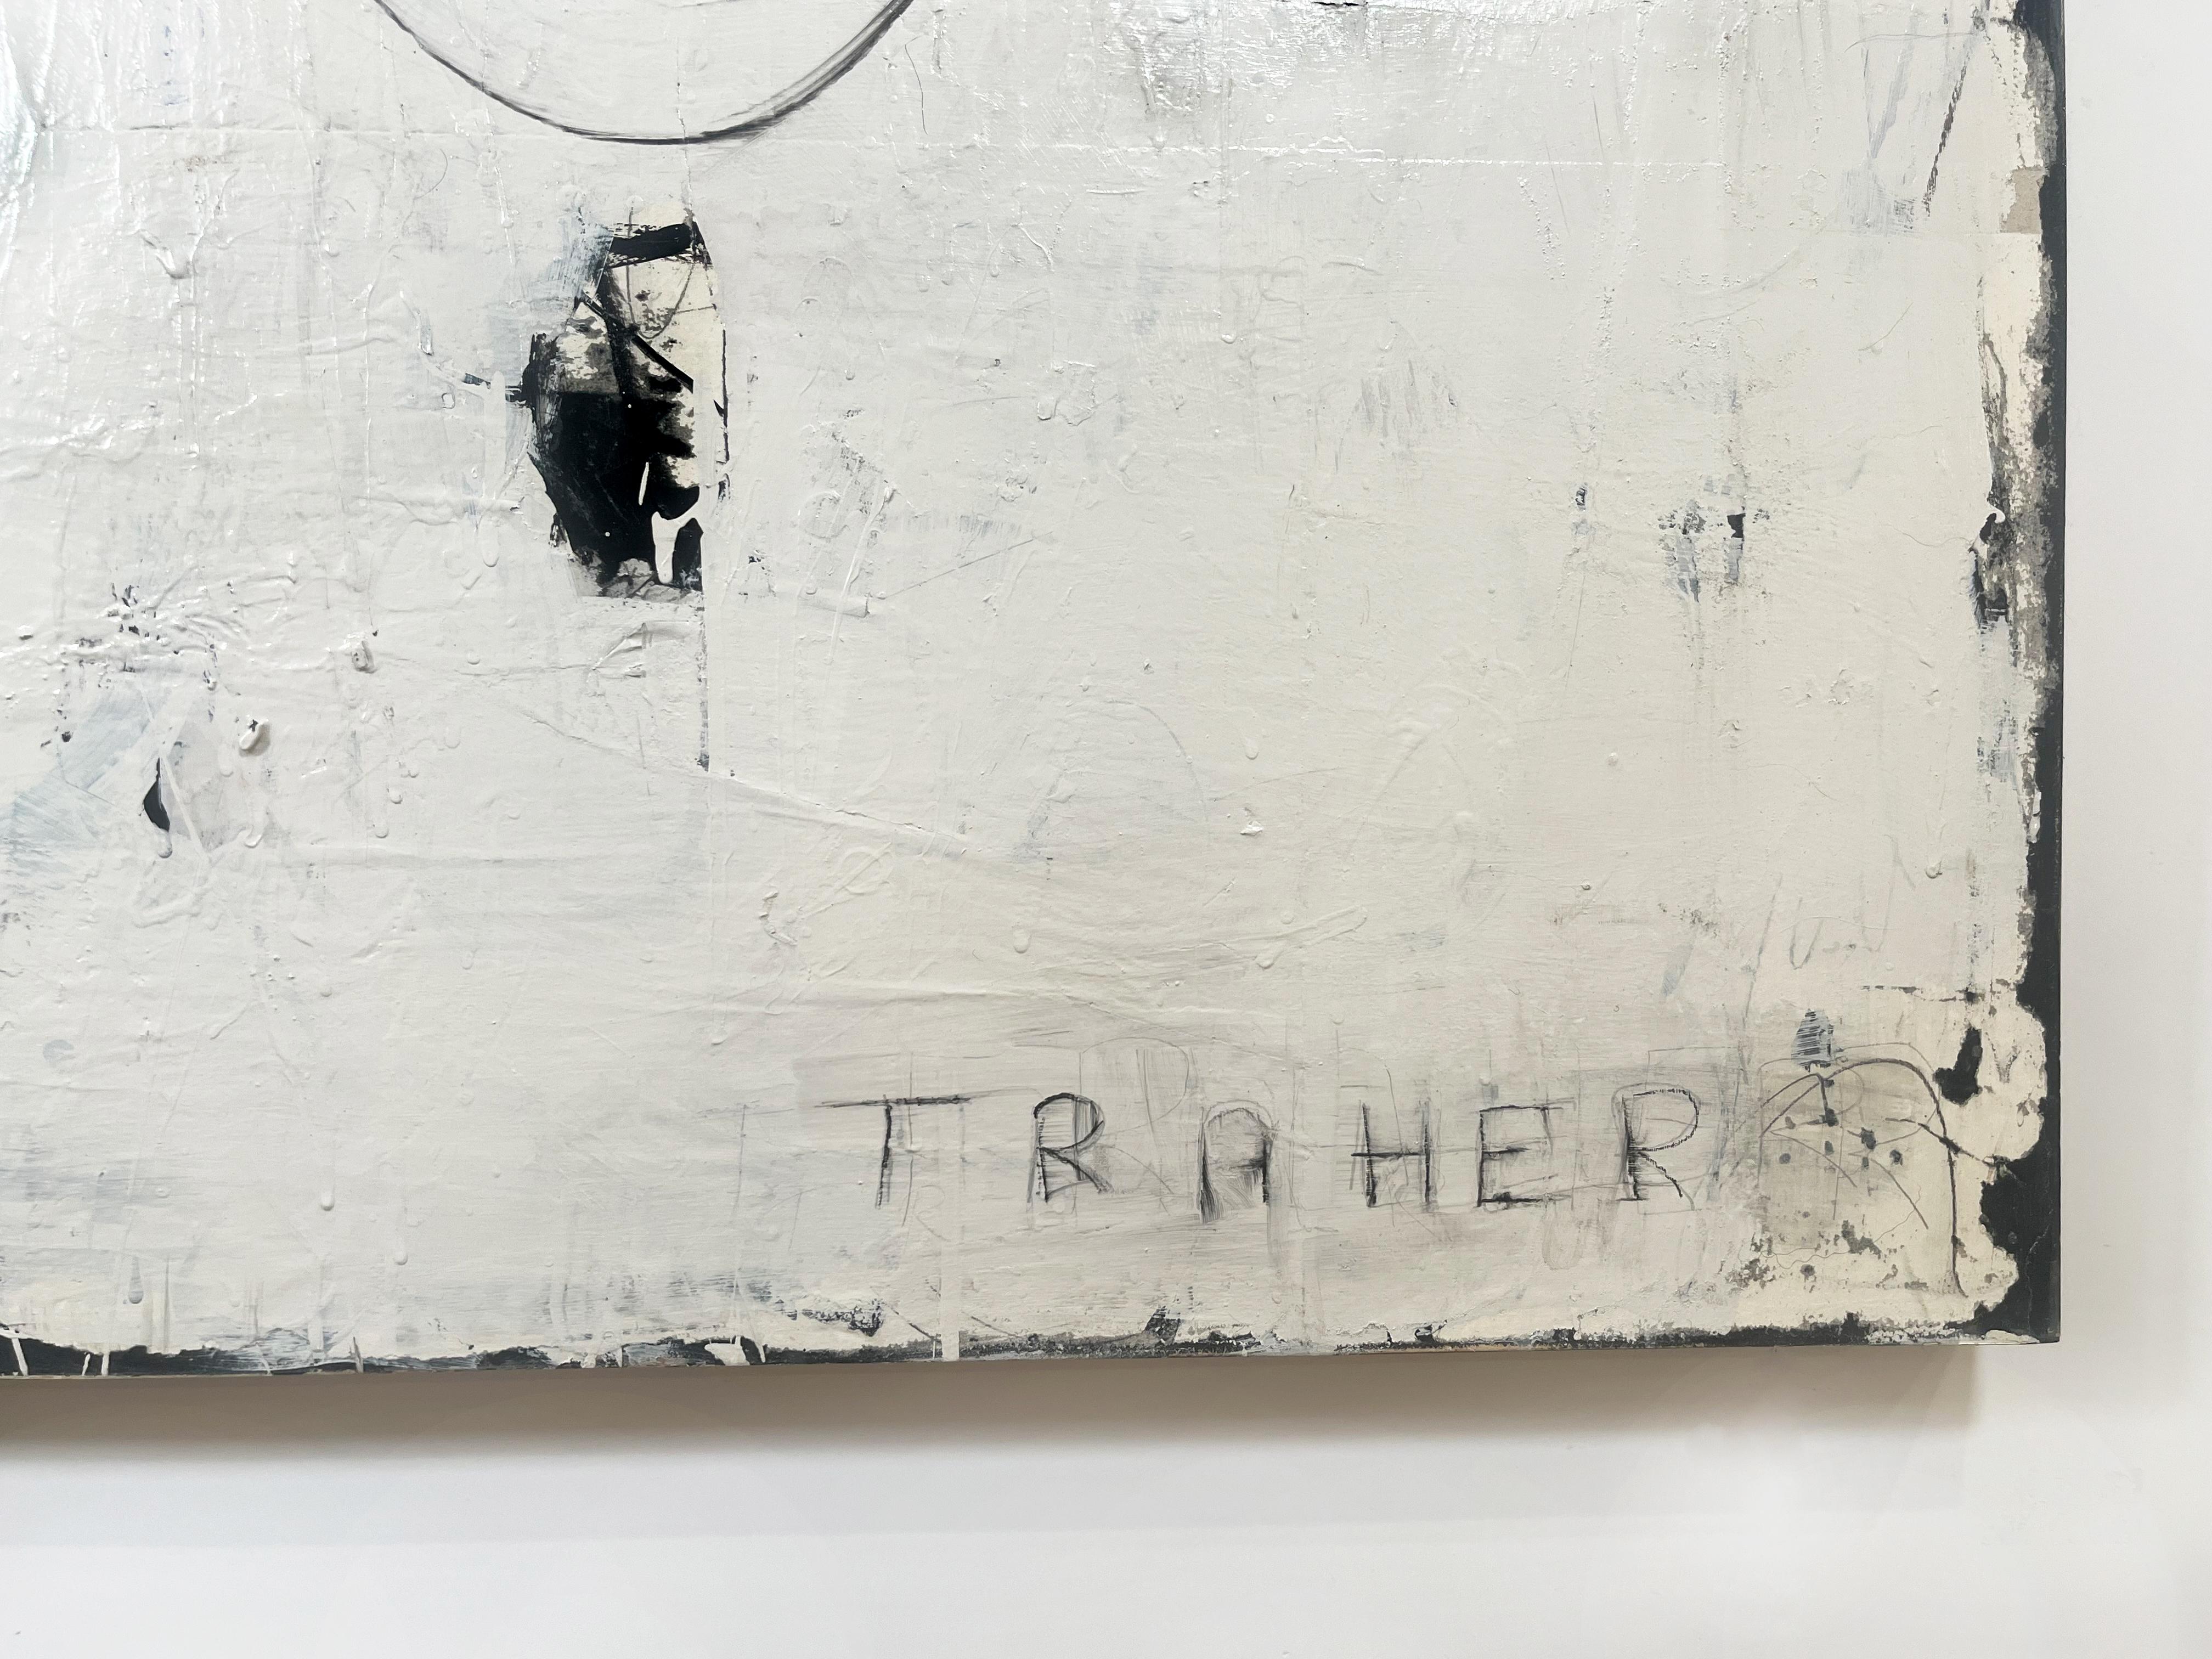 Sag, was du zu sagen hast, große abstrakte Textur auf Tafel, schwarz, weiß, braun (Abstrakt), Painting, von Miriam Traher